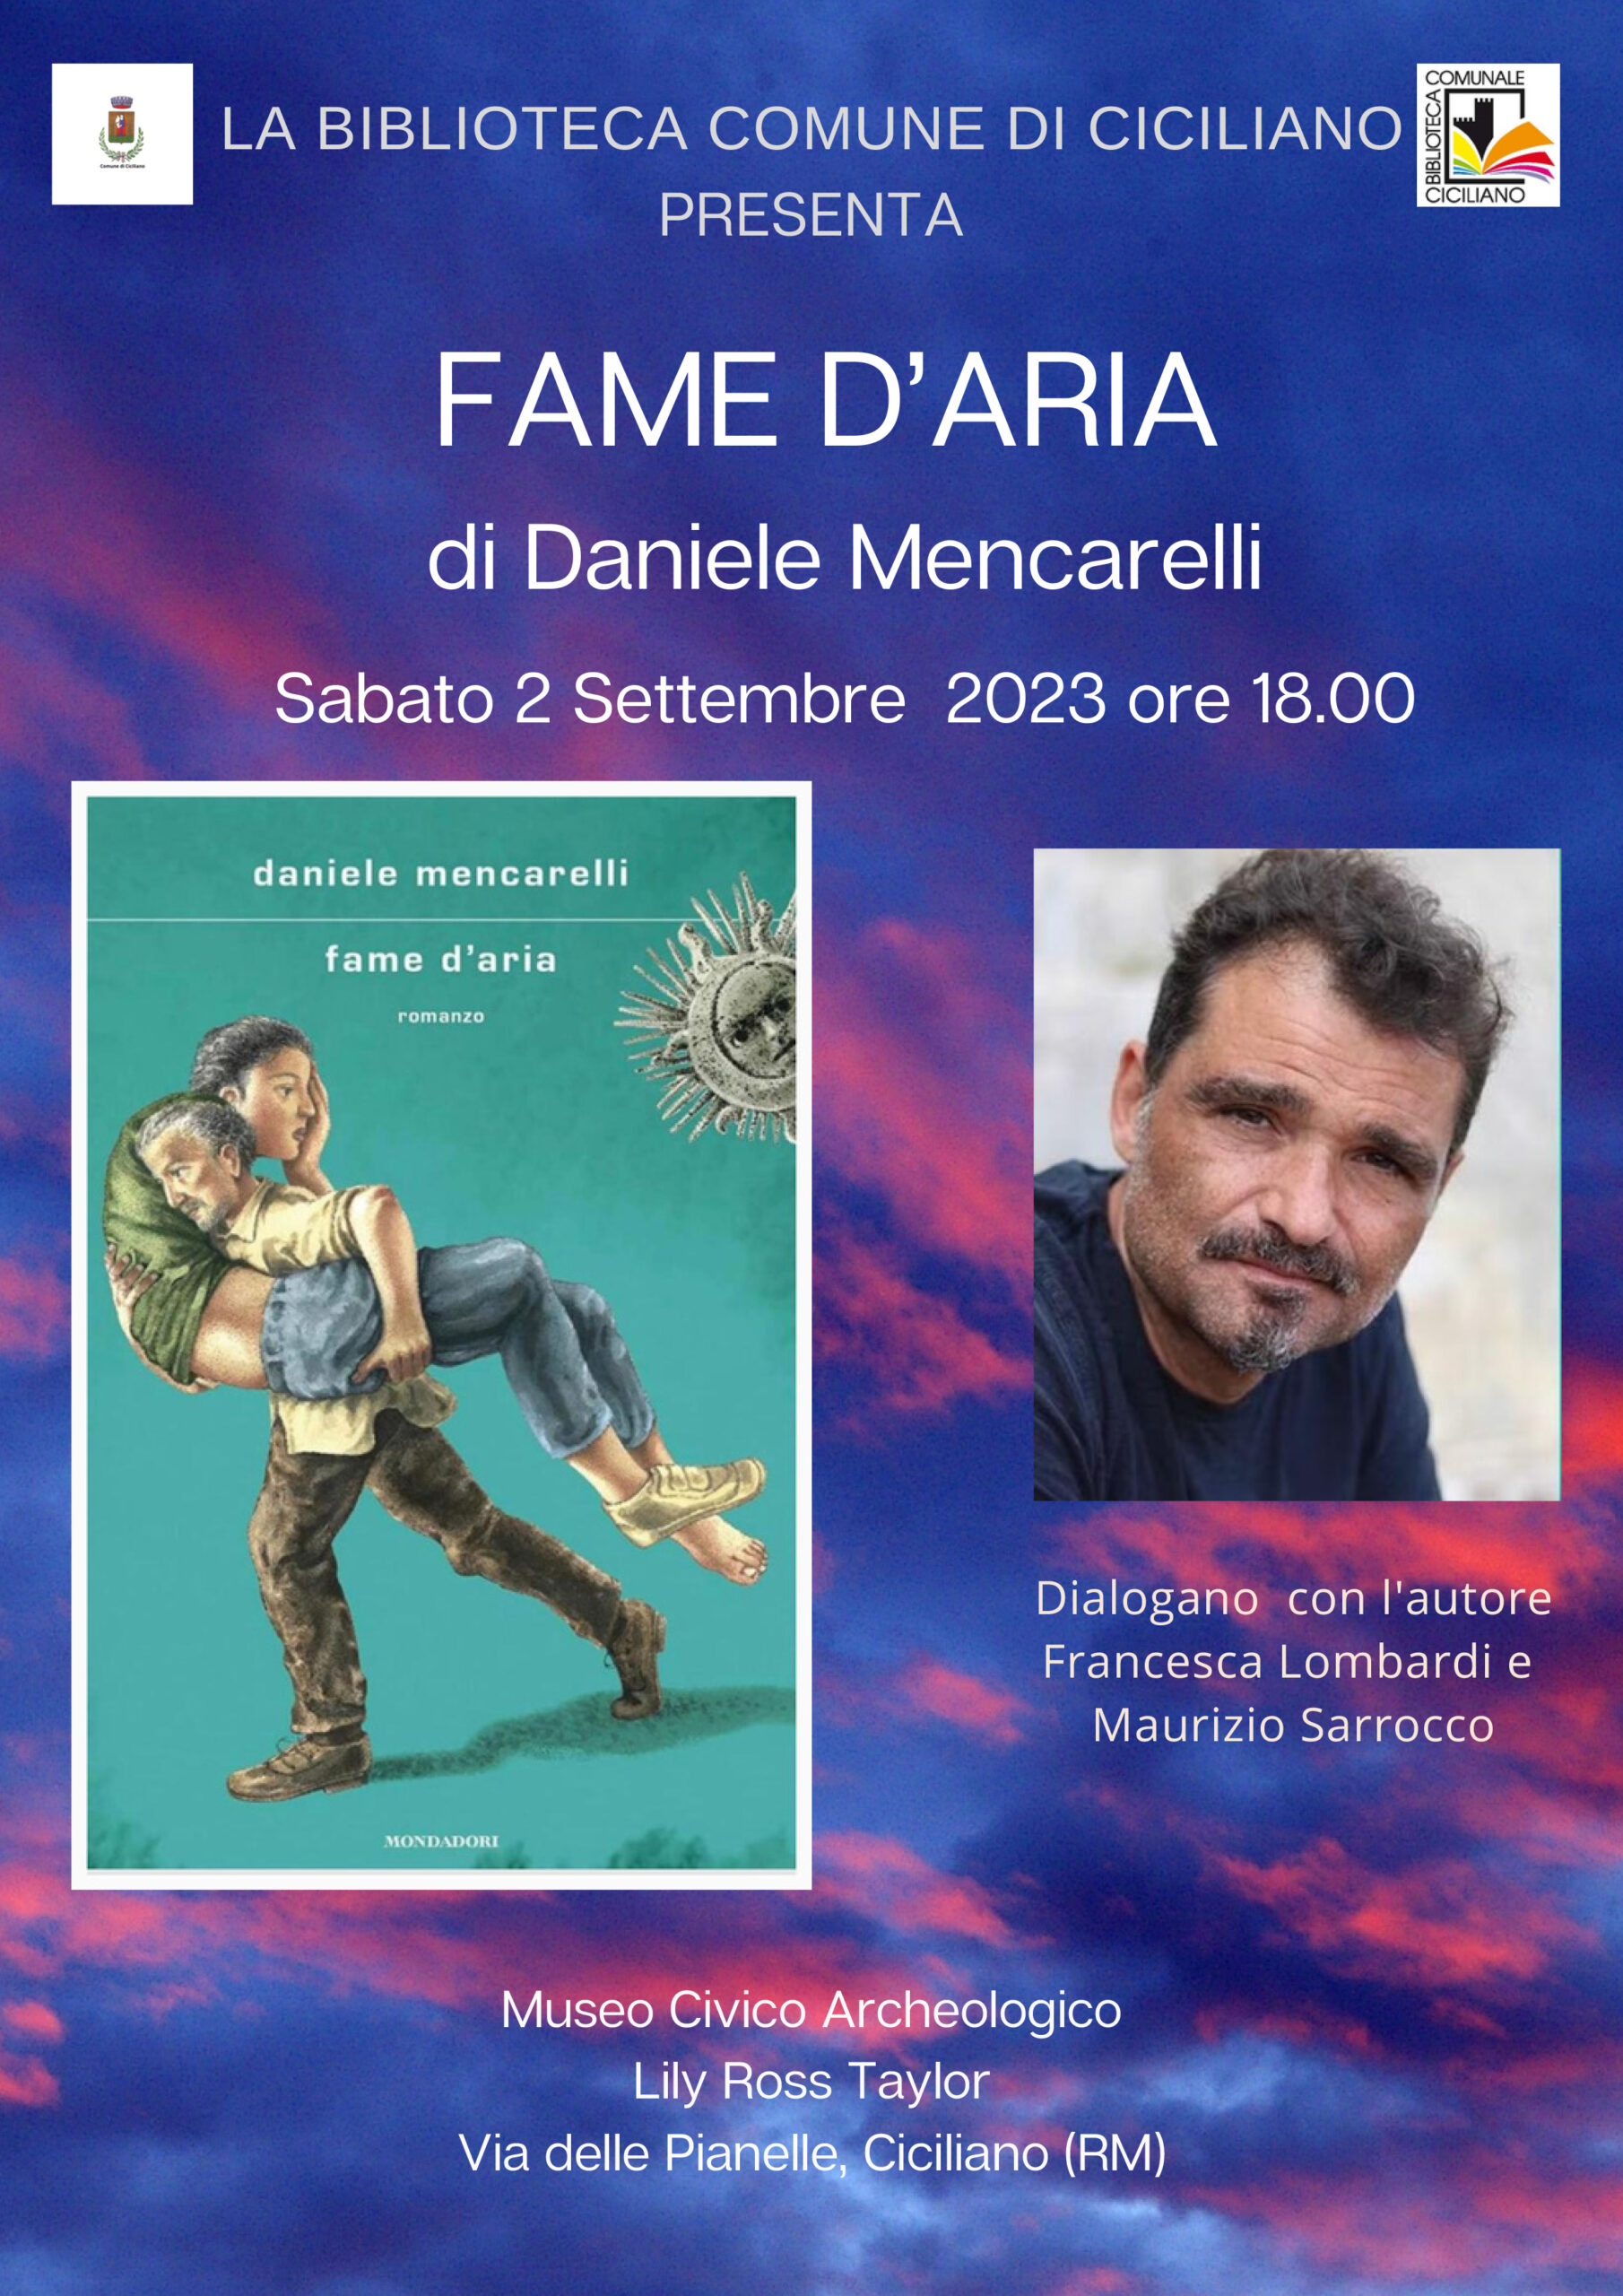 Grande attesa a Ciciliano per Daniele Mencarelli con il suo romanzo “Fame d' aria” – ConfineLive